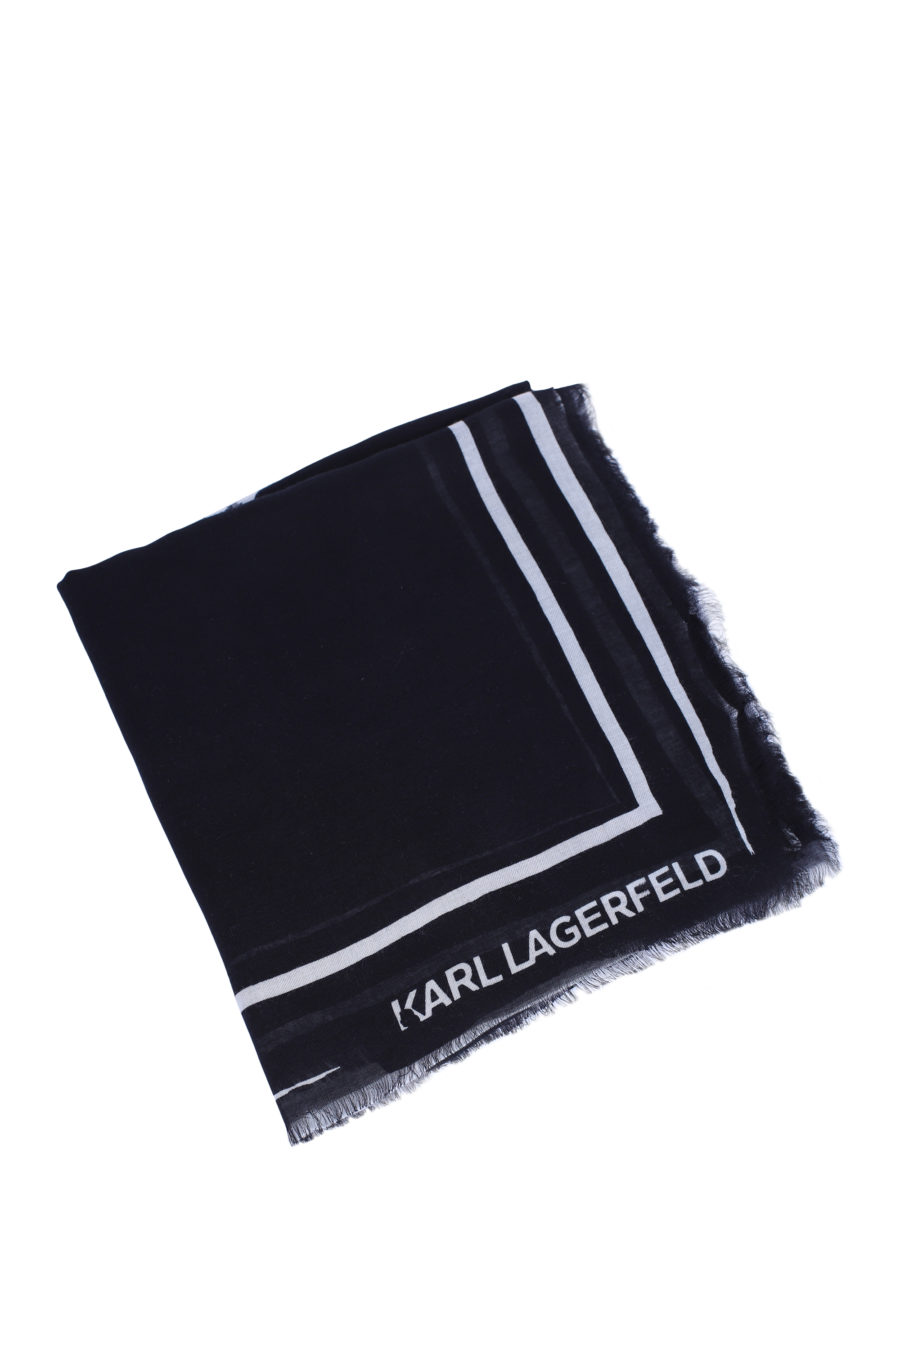 Bufanda negra con logo blanco grande - IMG 9145